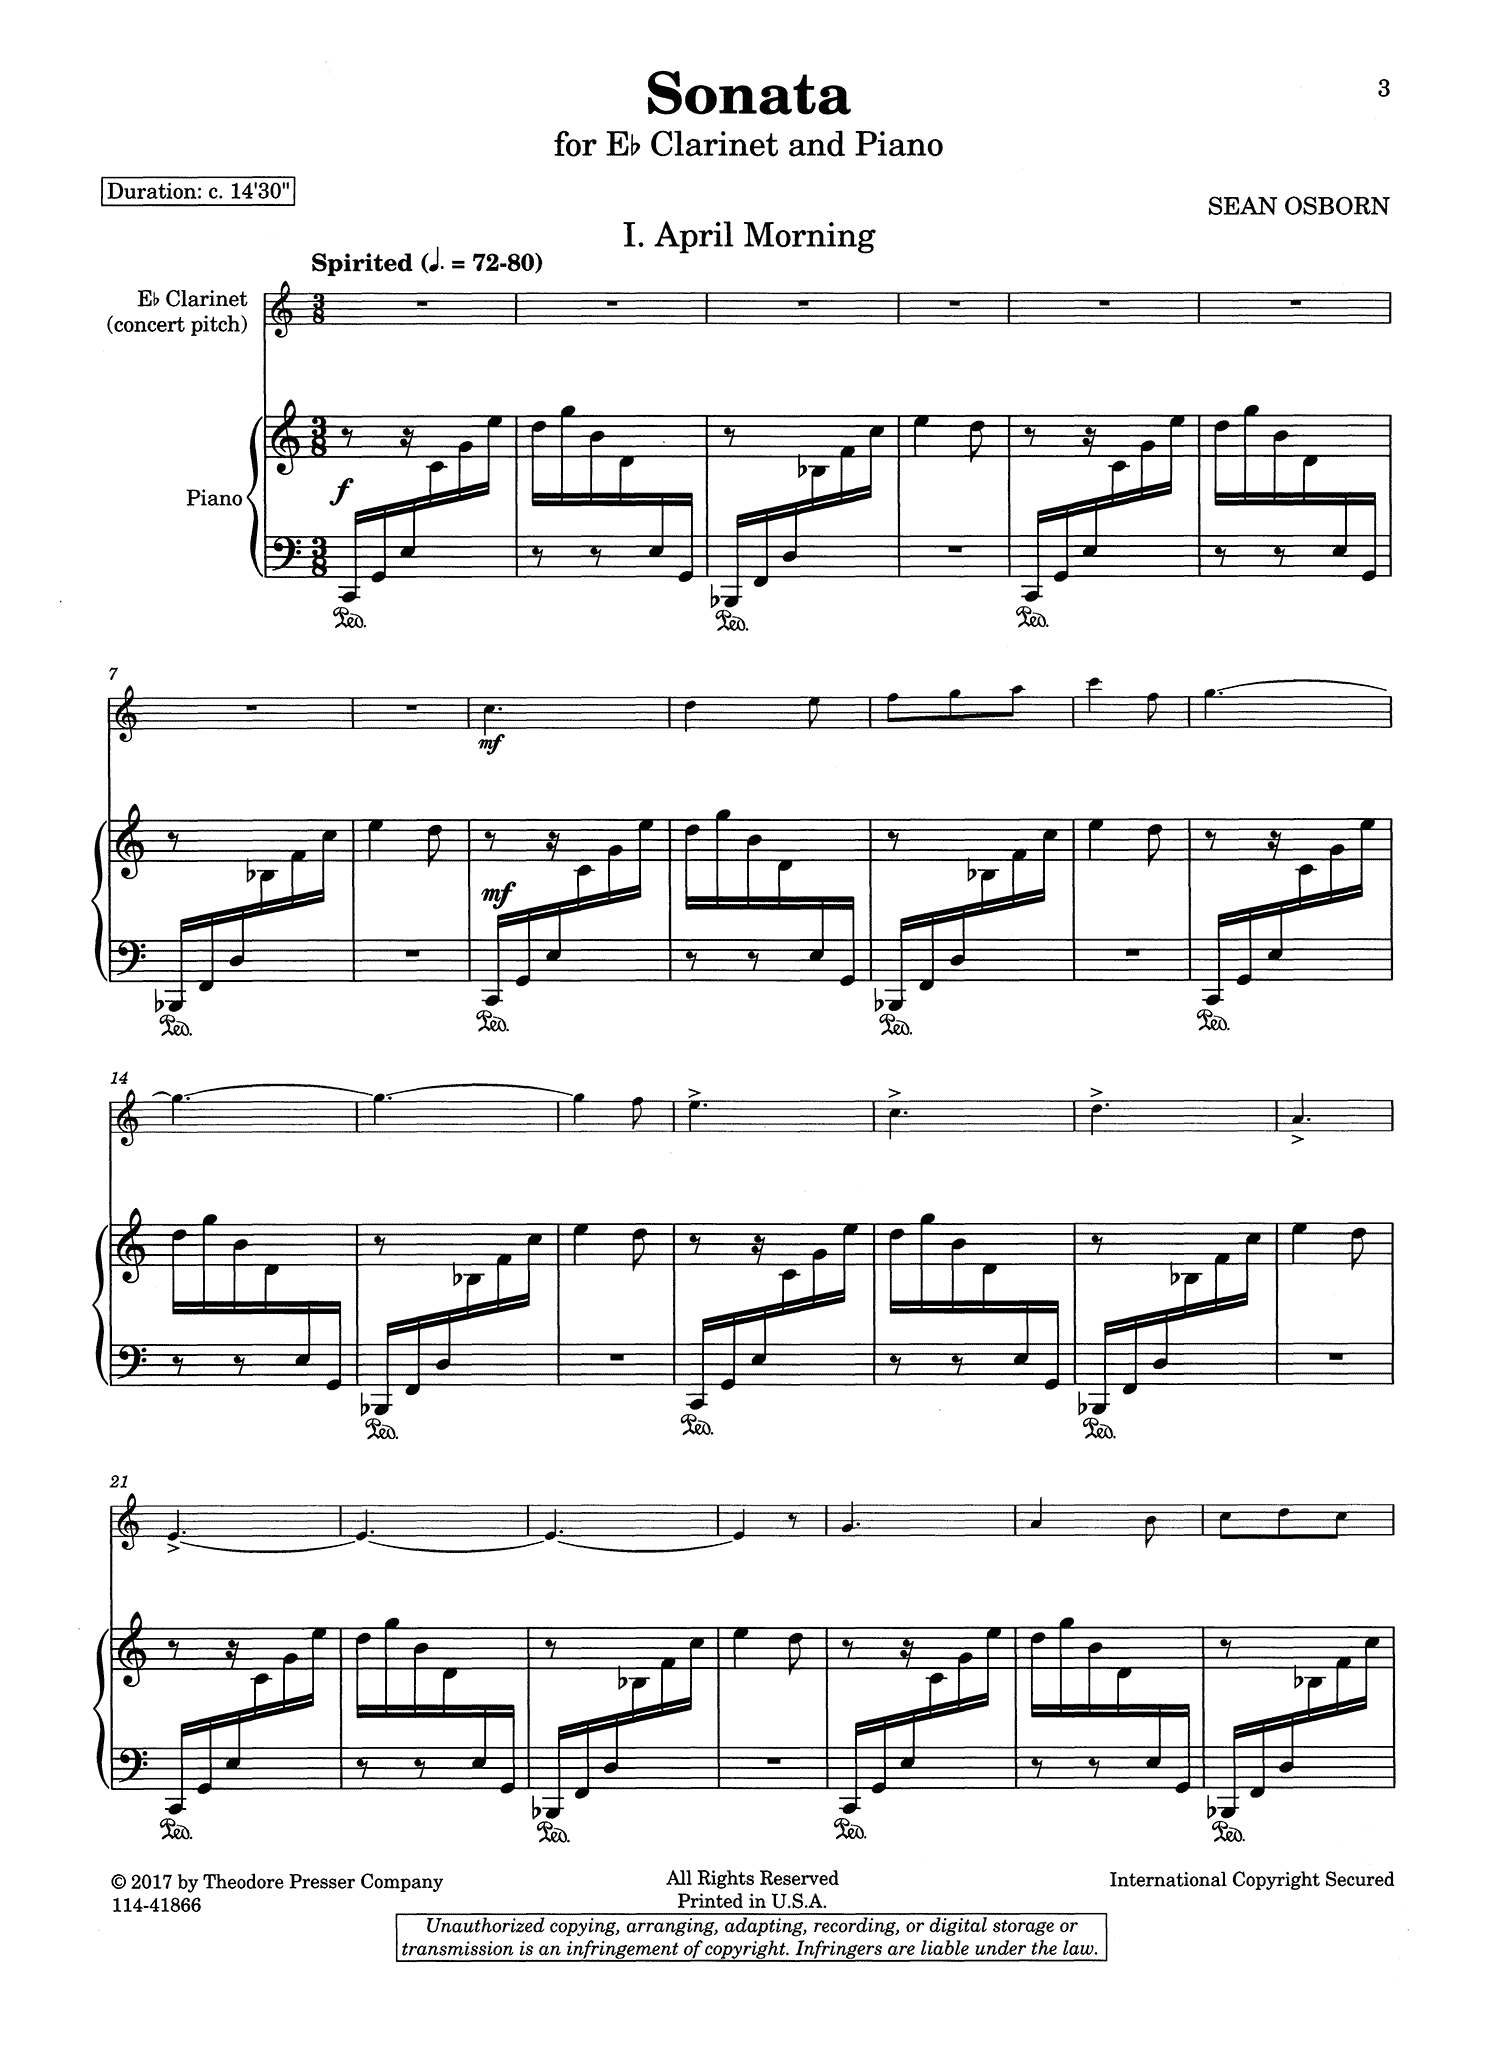 Sean Osborn Sonata for E-flat Clarinet & Piano - Movement 1